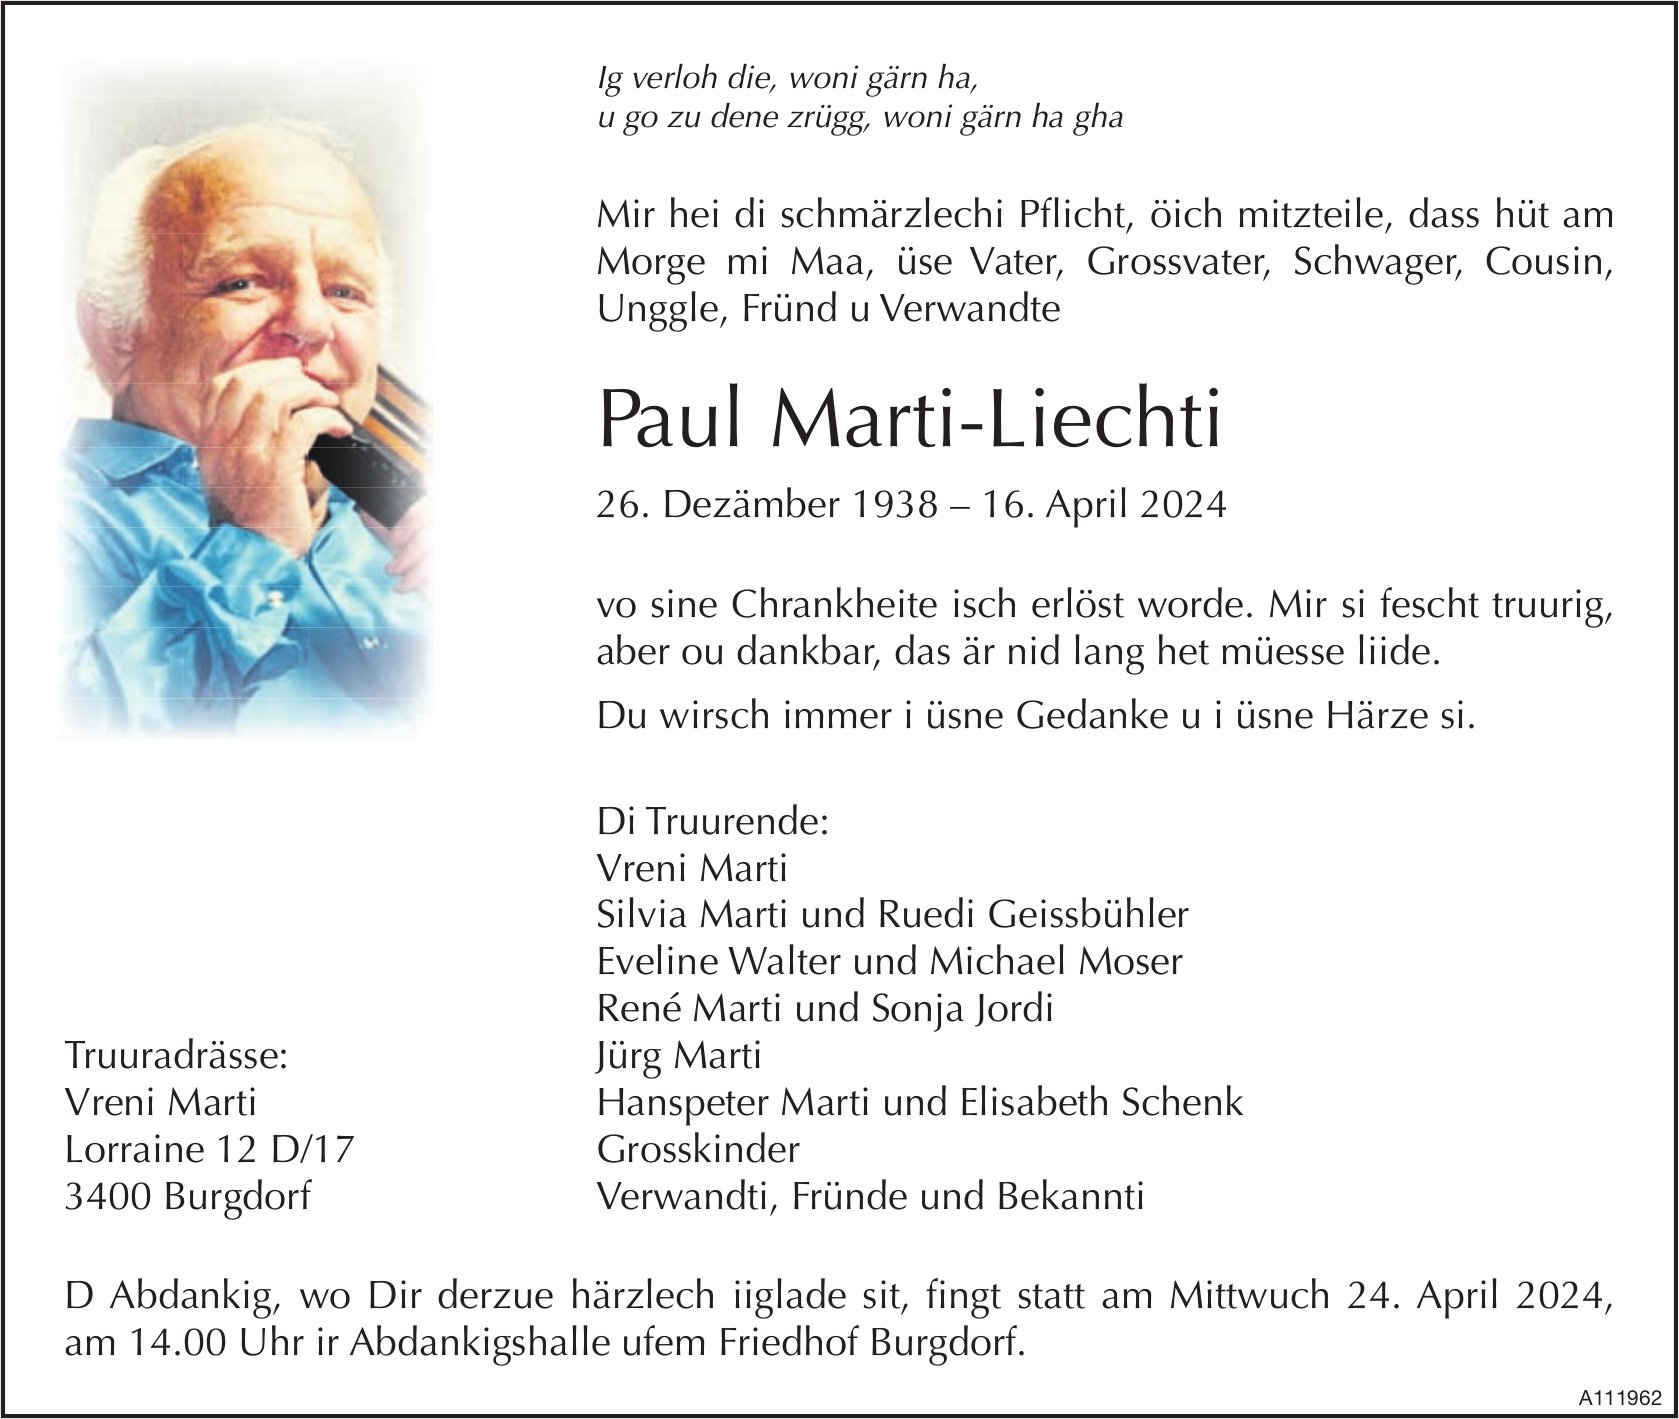 Paul Marti-Liechti, April 2024 / TA